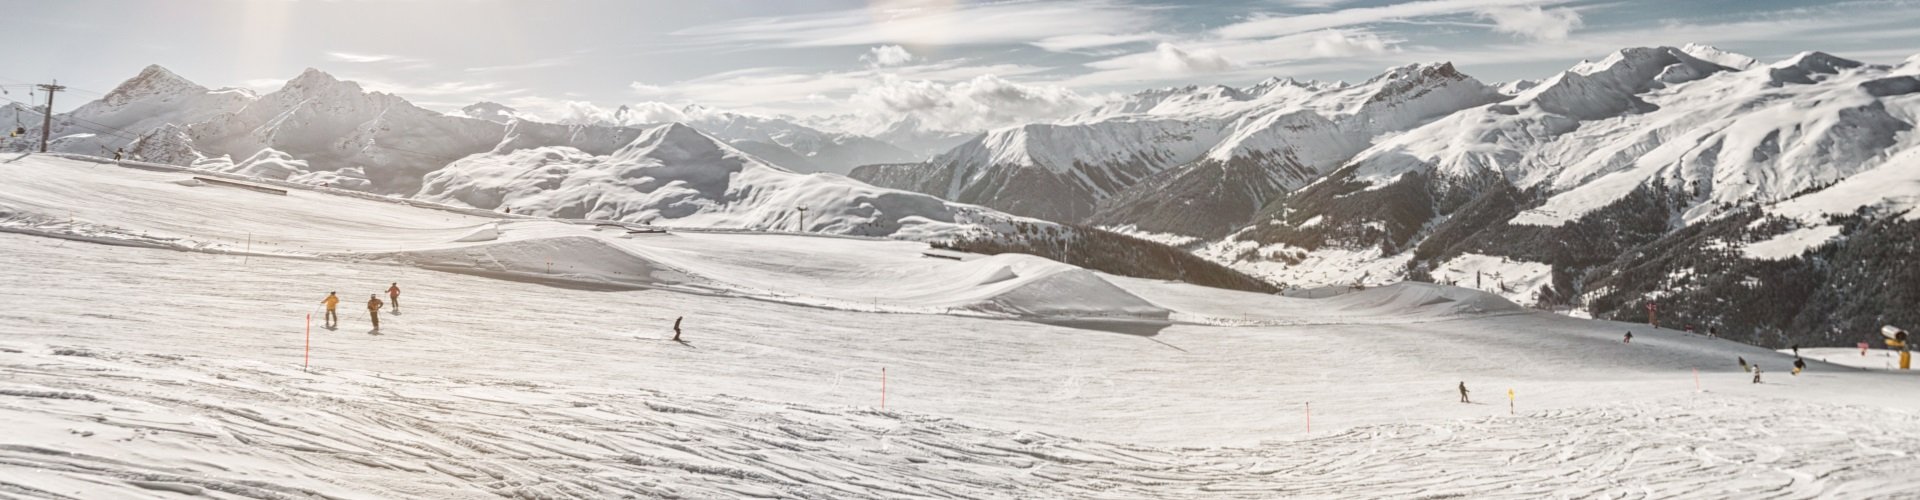 Skigebiet Davos und Klosters